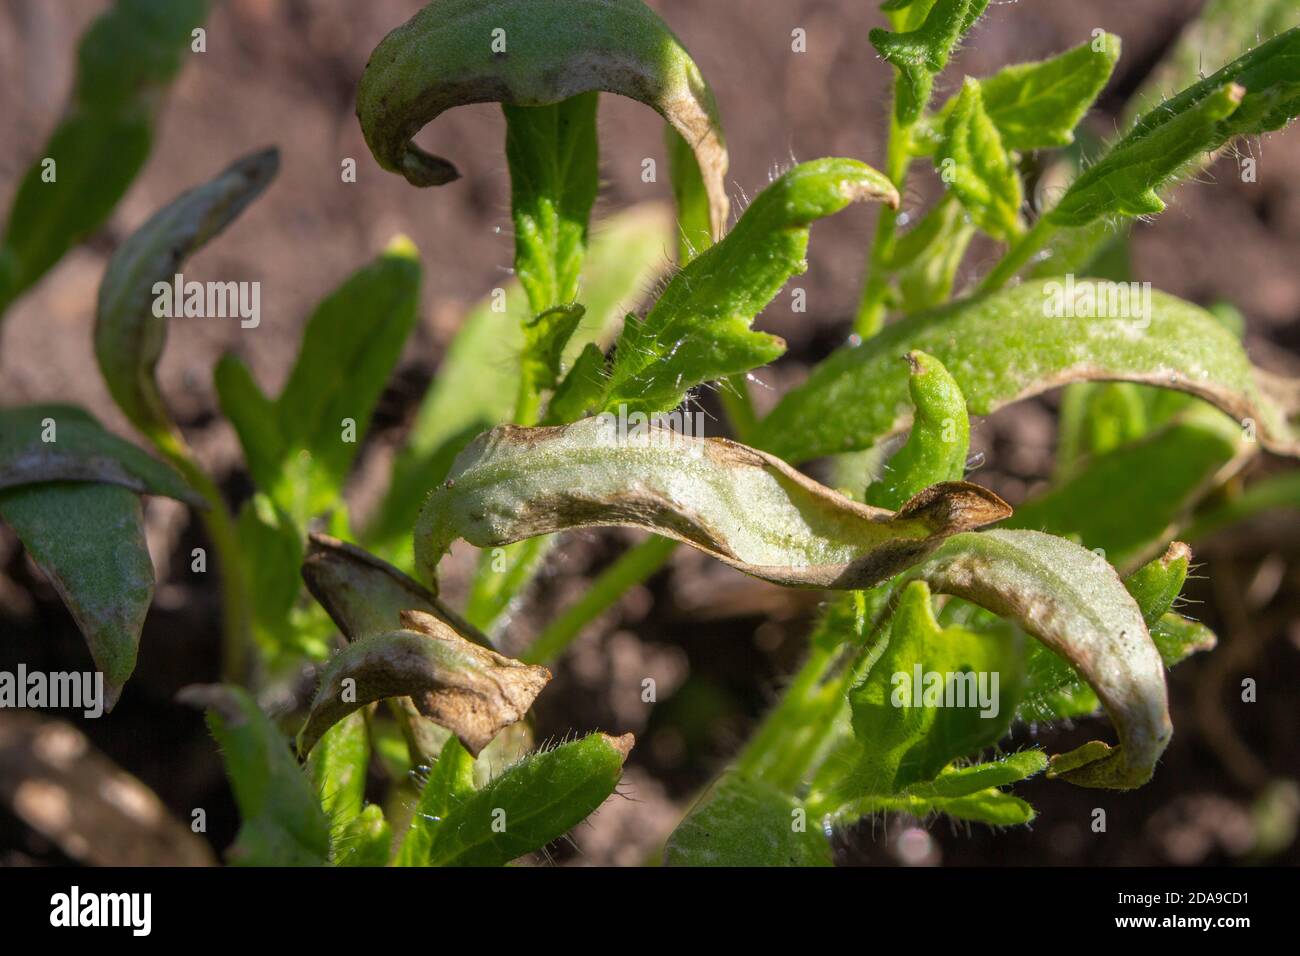 Le foglie delle piantine di pomodoro nella serra sono danneggiate dall'alta temperatura da impropria cura delle piante. Foto Stock